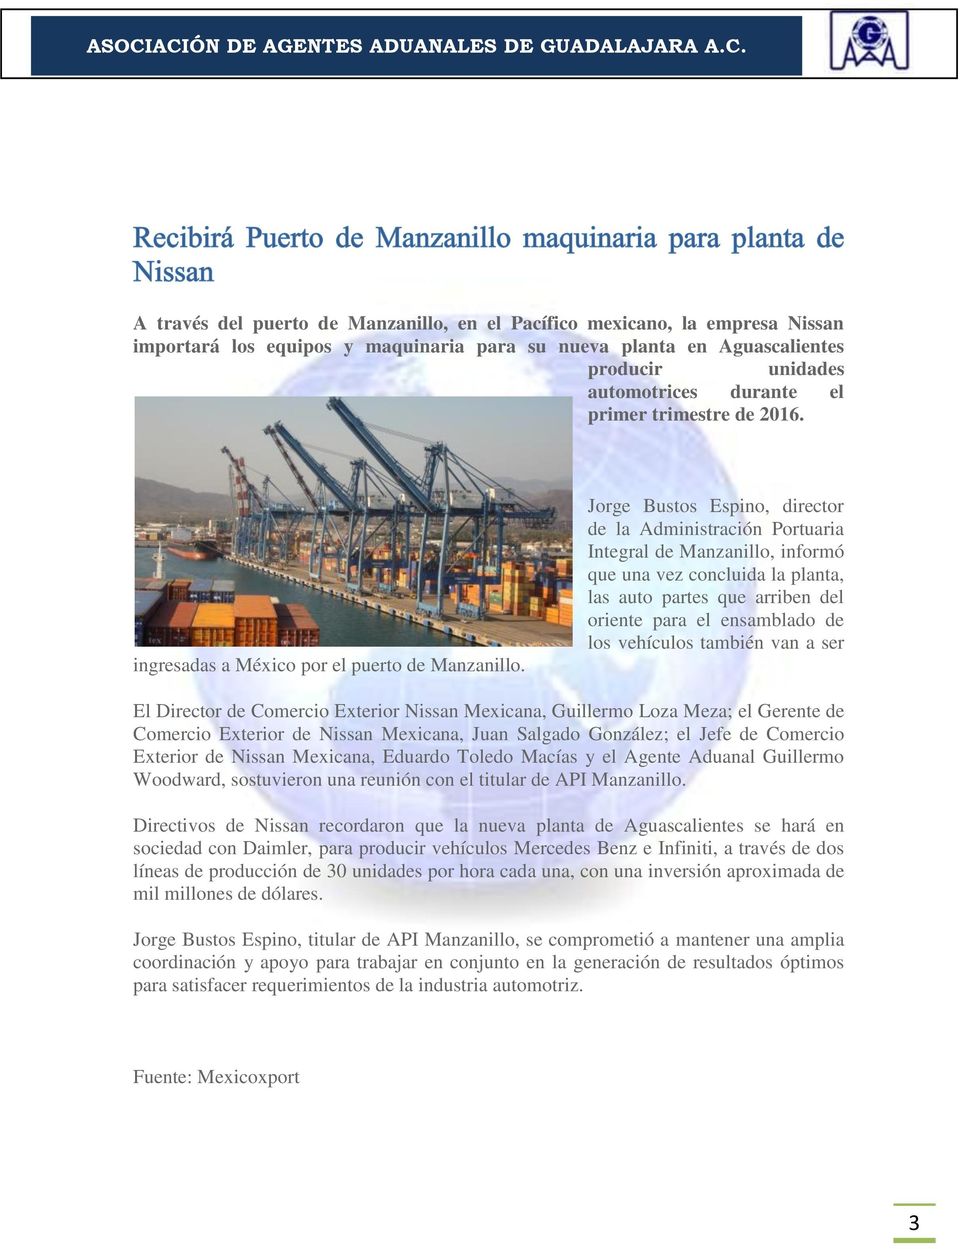 Jorge Bustos Espino, director de la Administración Portuaria Integral de Manzanillo, informó que una vez concluida la planta, las auto partes que arriben del oriente para el ensamblado de los